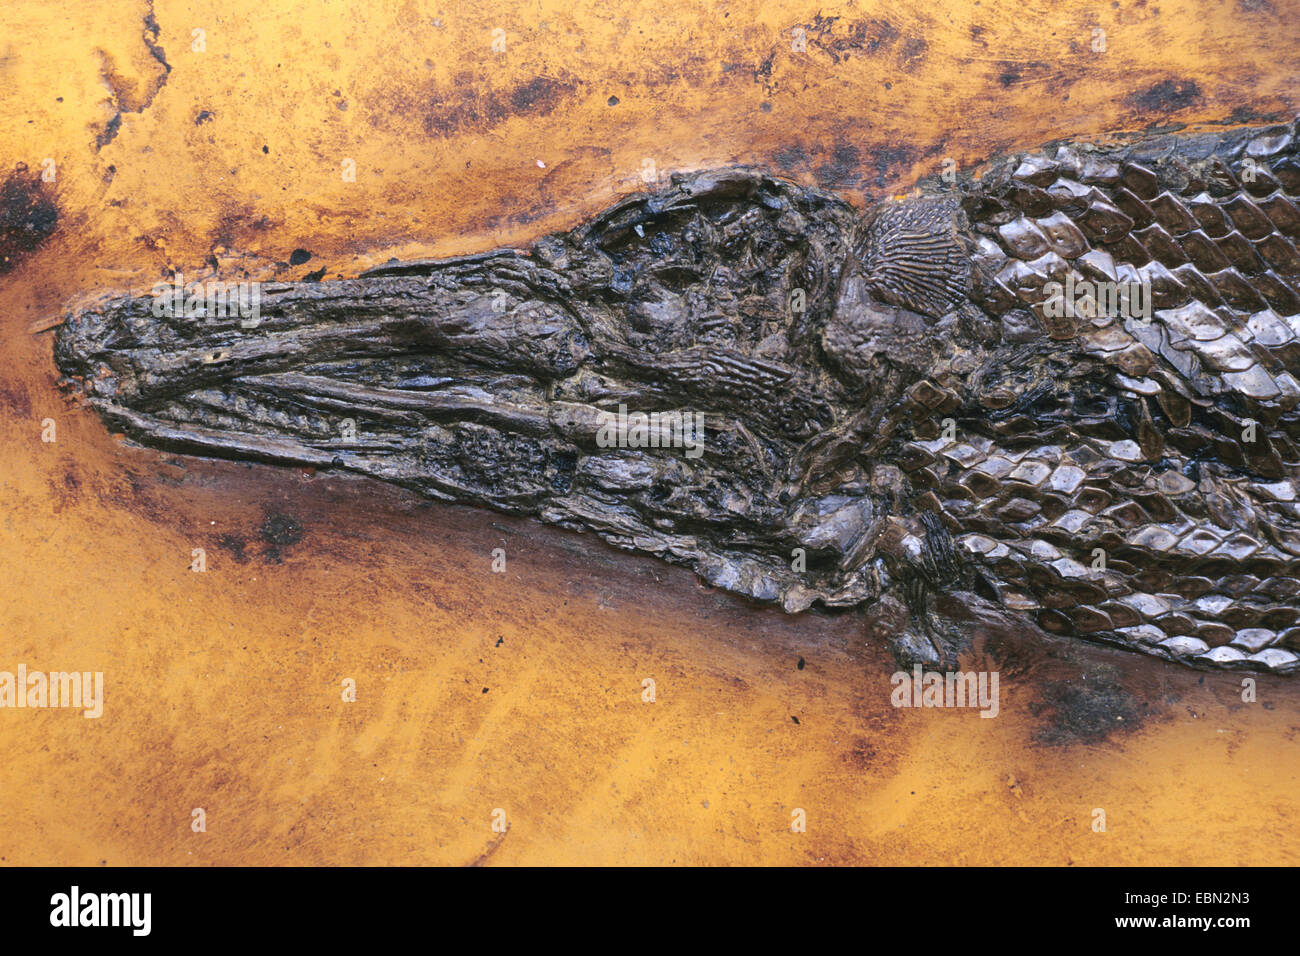 Gar, Garpike (Atractosteus kinkelini), extinct gar from eocene, Germany, Messel Stock Photo